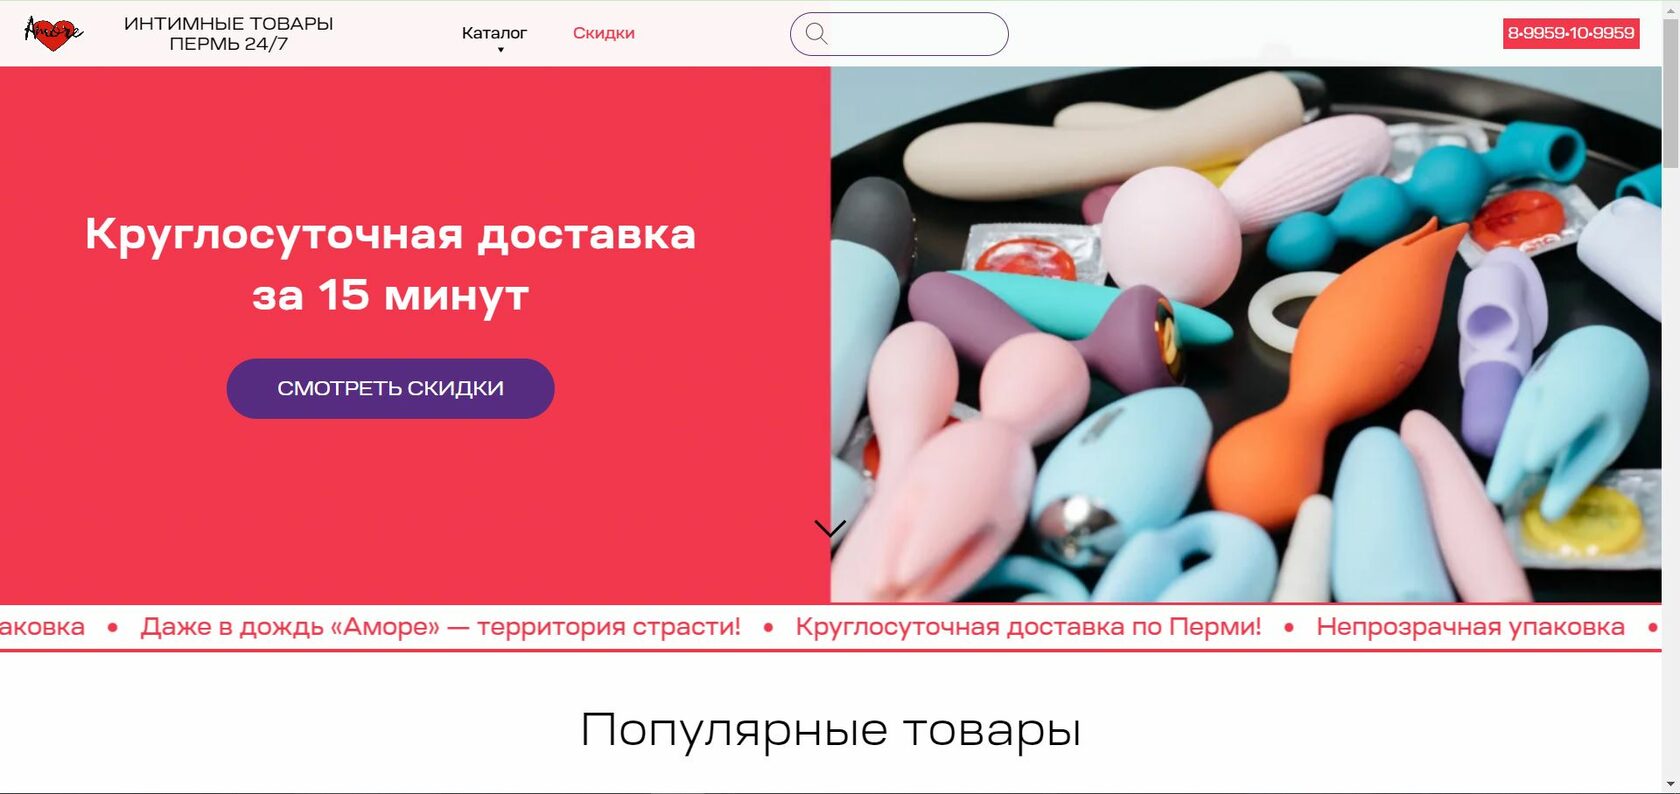 Купить ВИБРАТОР в секс-шопе в Перми, цены на ВИБРАТОРЫ онлайн